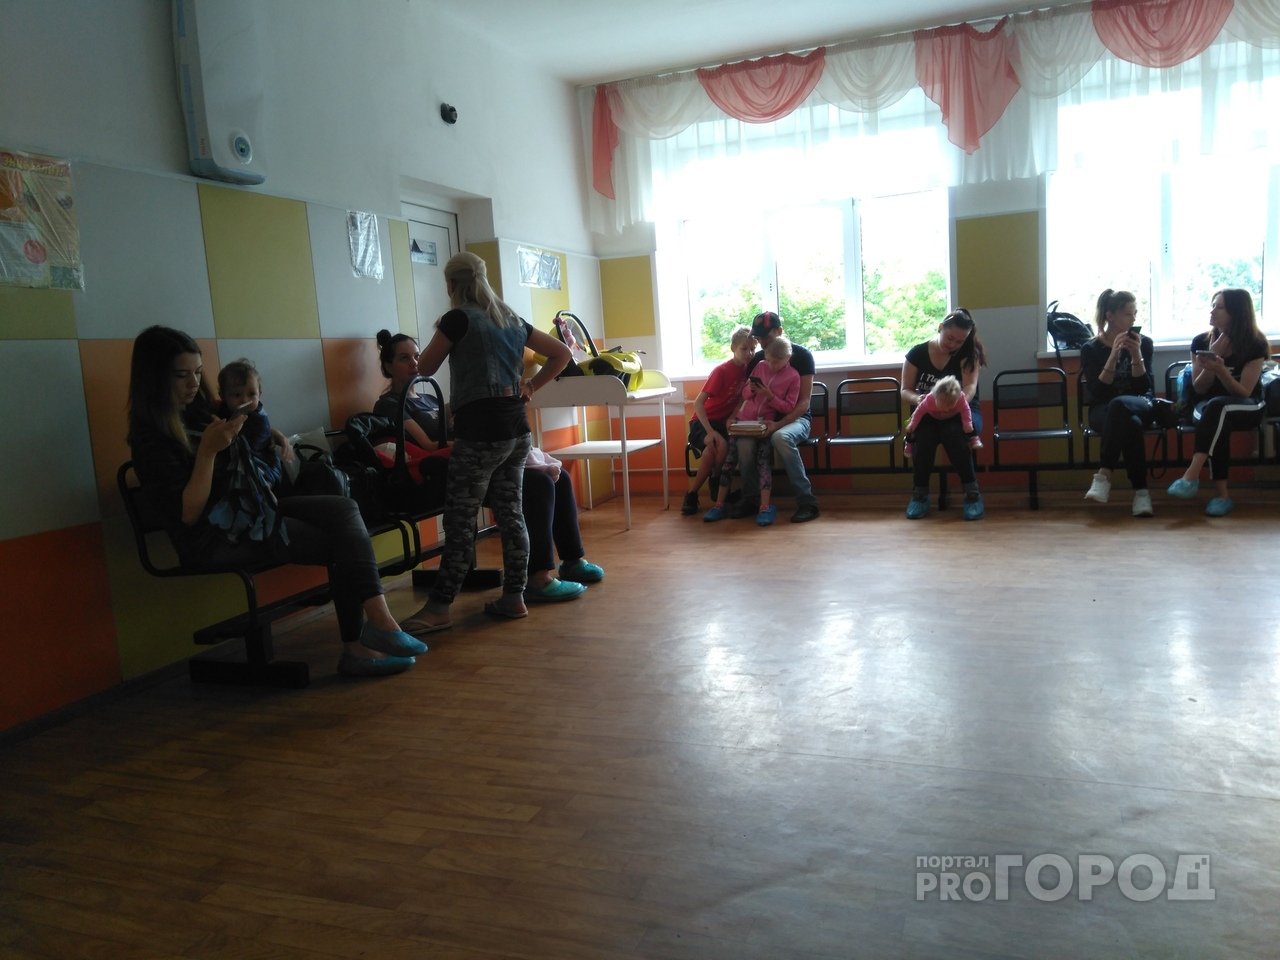 Ярославцы сообщают о закрытии детской поликлиники в центре города: ответ властей